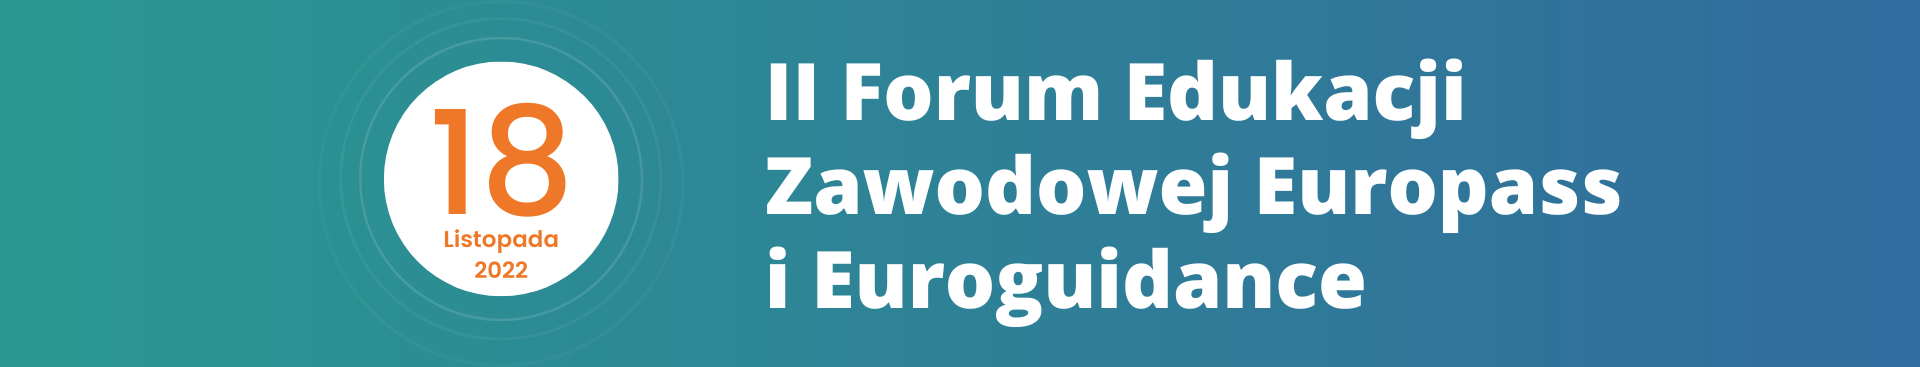 II Forum Edukacji Zawodowej Europass i Euroguidance